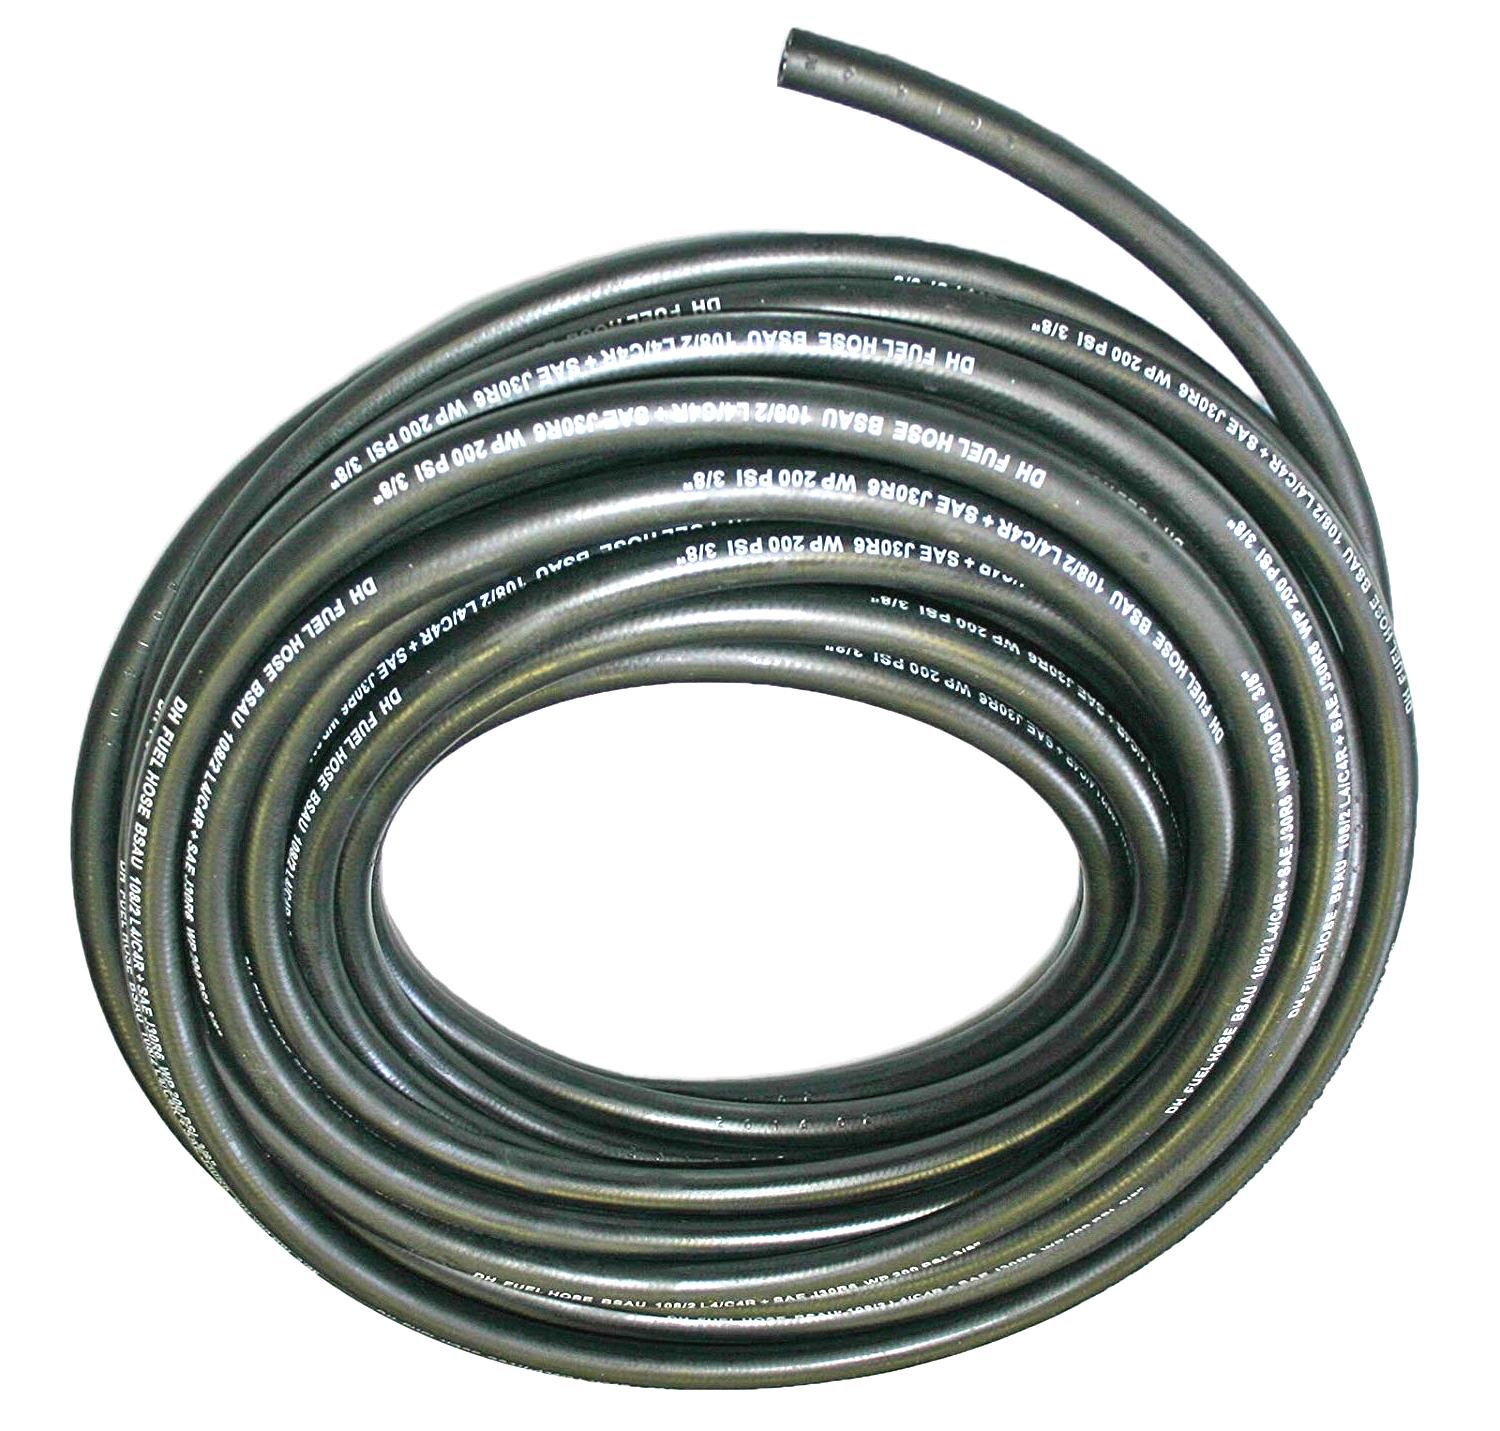 Palivová hadička gumová,délka:1m,vnější průměr:5,5mm,vnitřní průměr:2,5mm